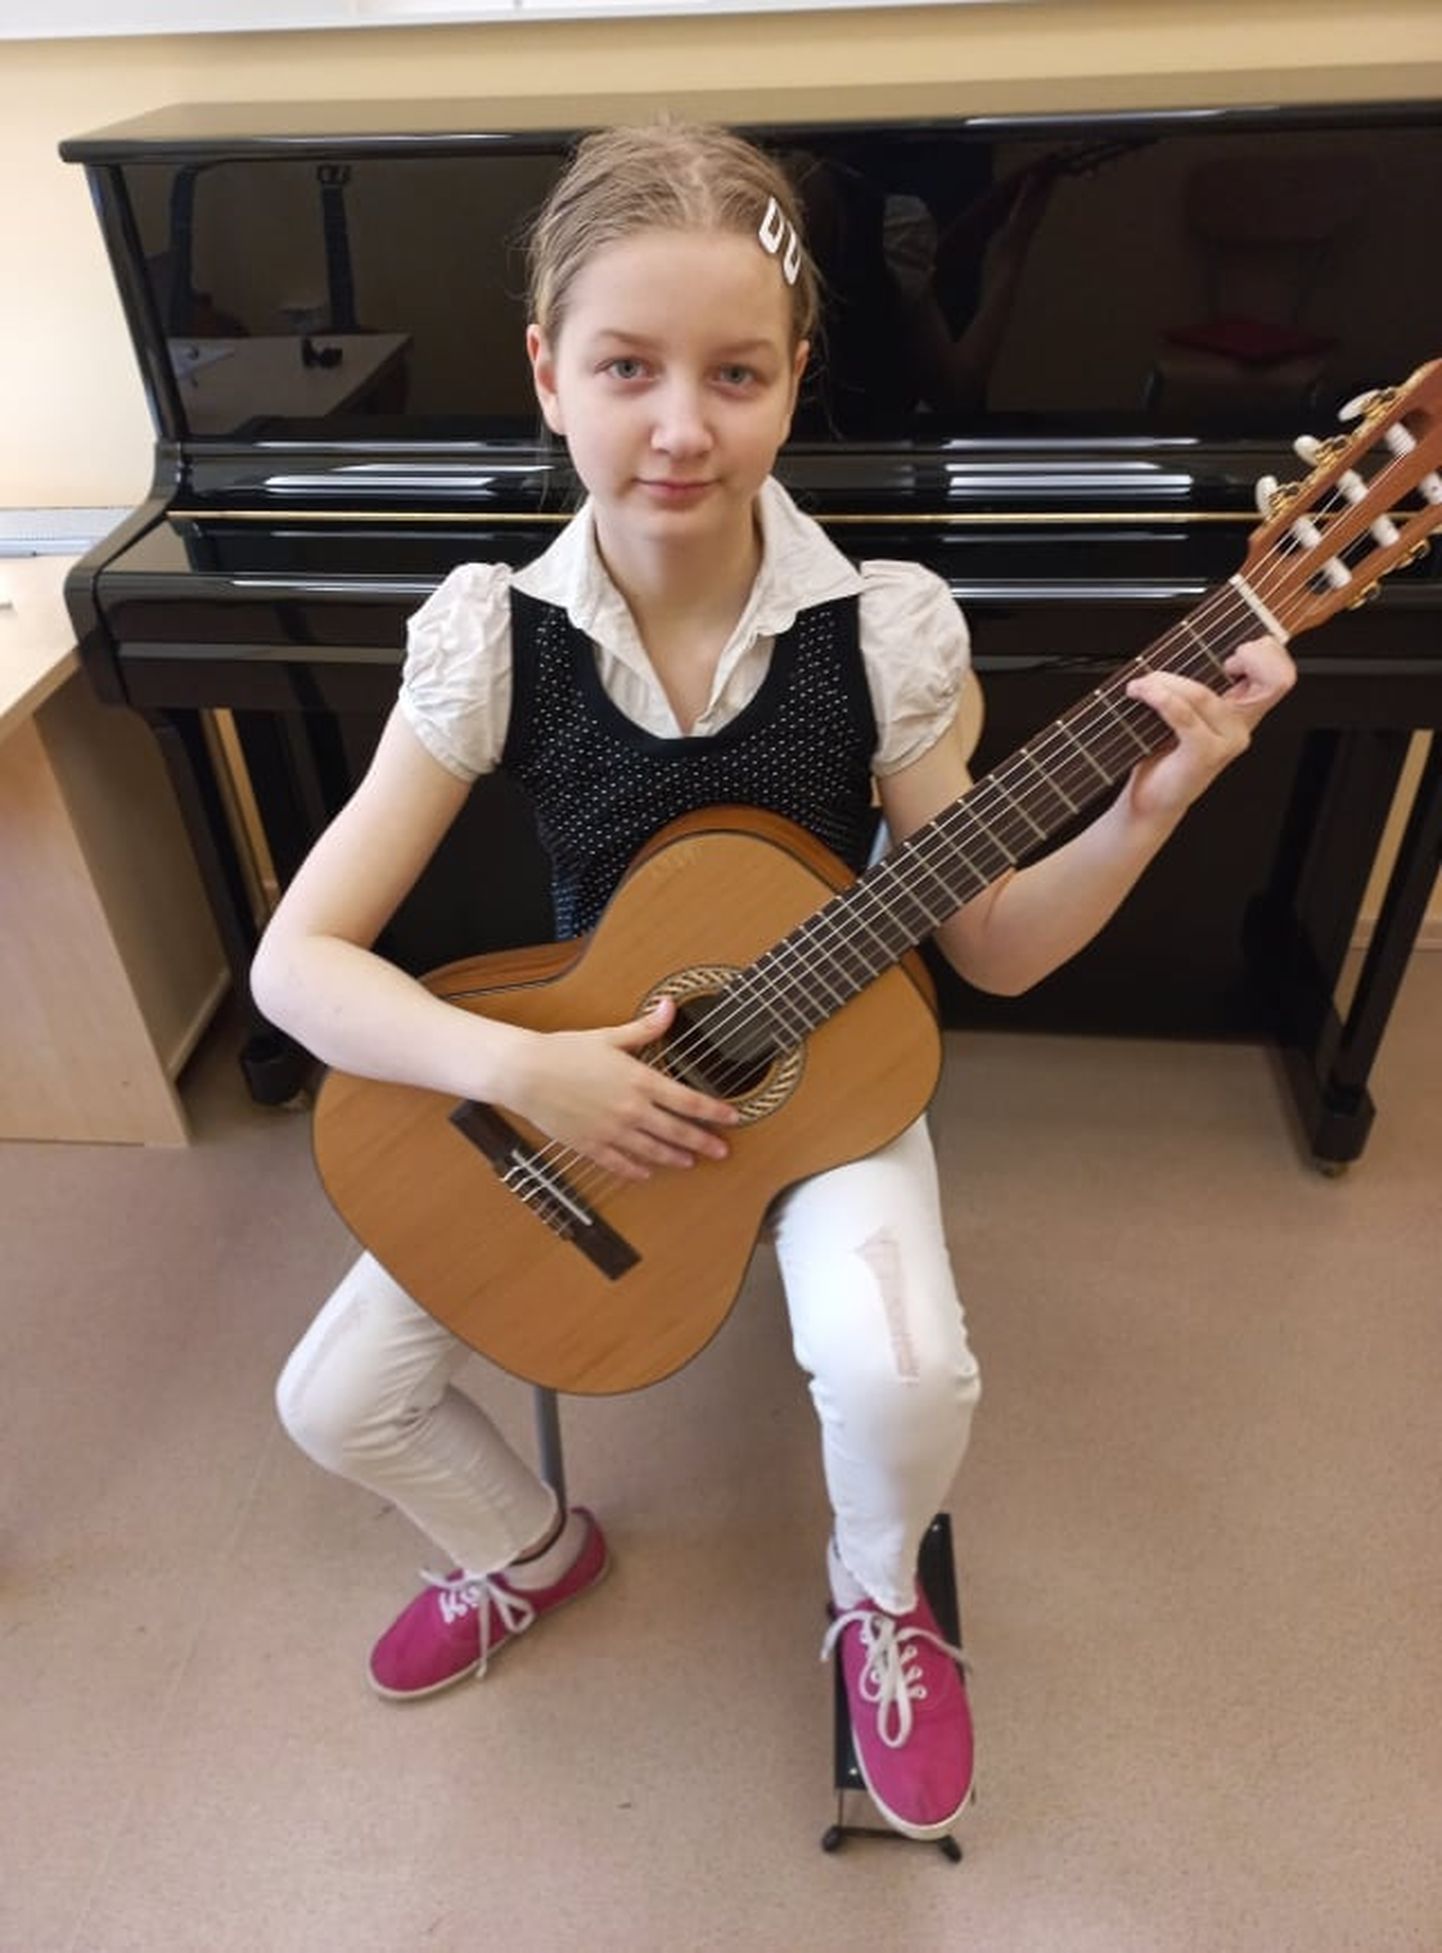 Võru muusikakooli õpilastest sai Jessica Peebo Tartu ja Lõuna-Eesti regionaalses voorus I vanuserühmas esikoha